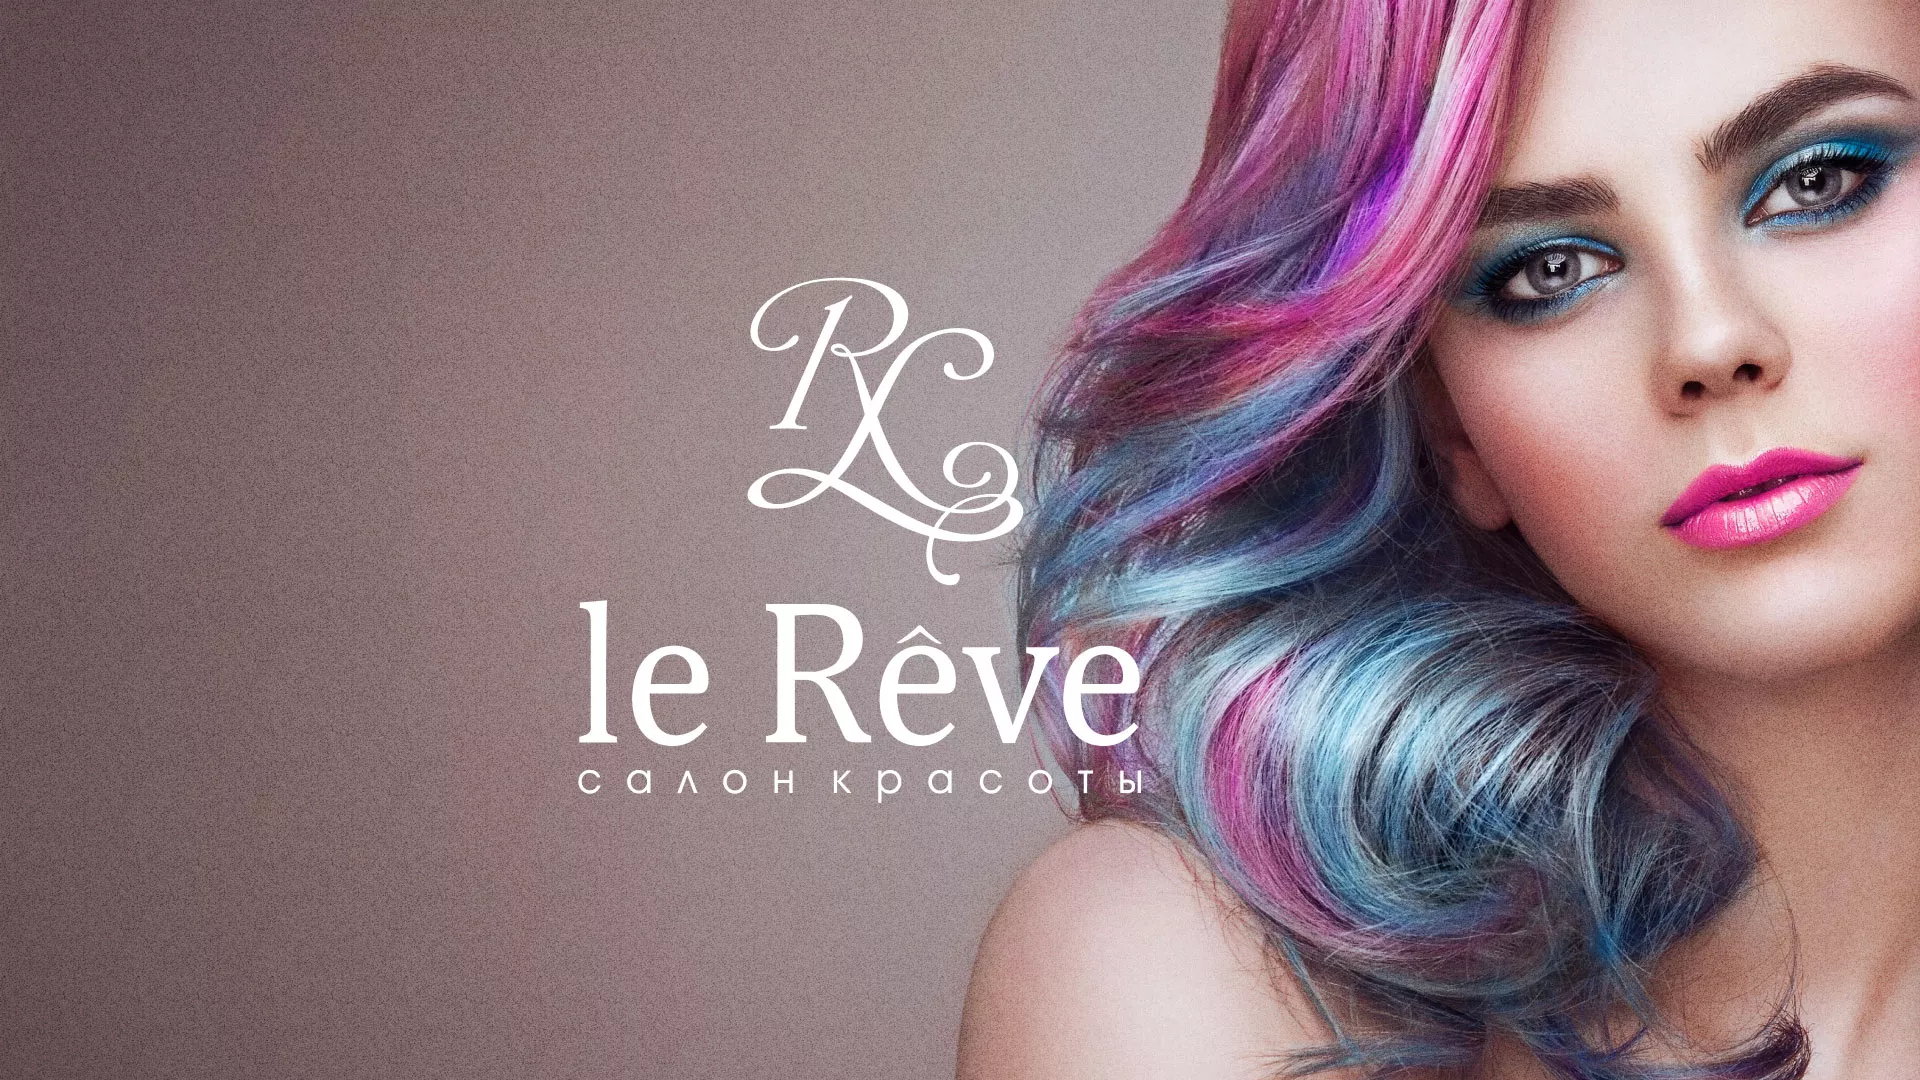 Создание сайта для салона красоты «Le Reve» в Сочи